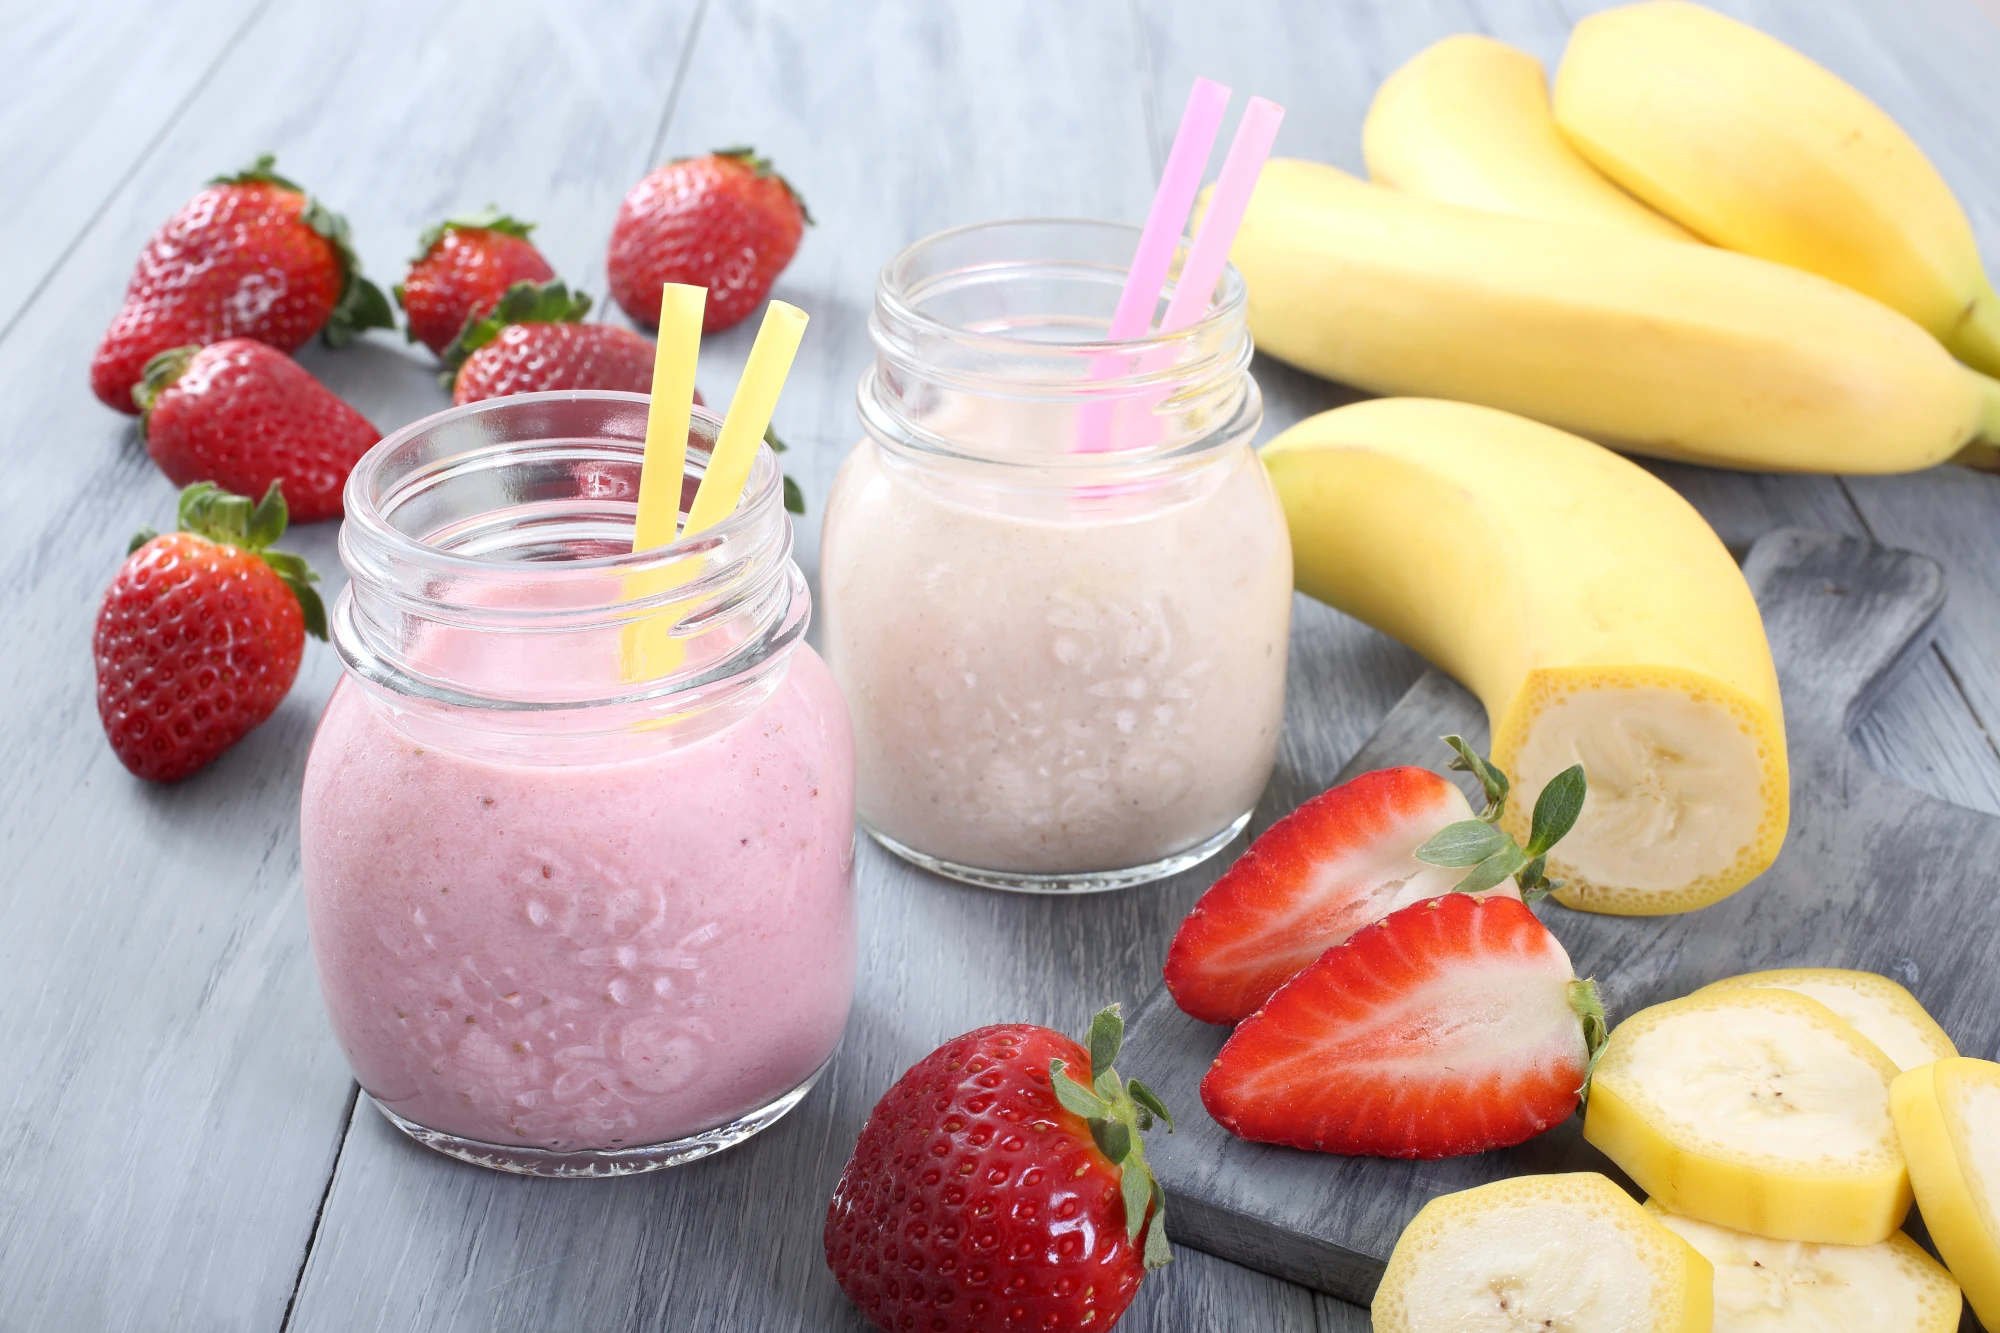 Zu sehen sind zwei Gläser mit Smoothies oder Jogurt darin. In jedem Glas sind zwei Strohhalme, um die Gläser herum liegen frische Erdbeeren und Bananen. 